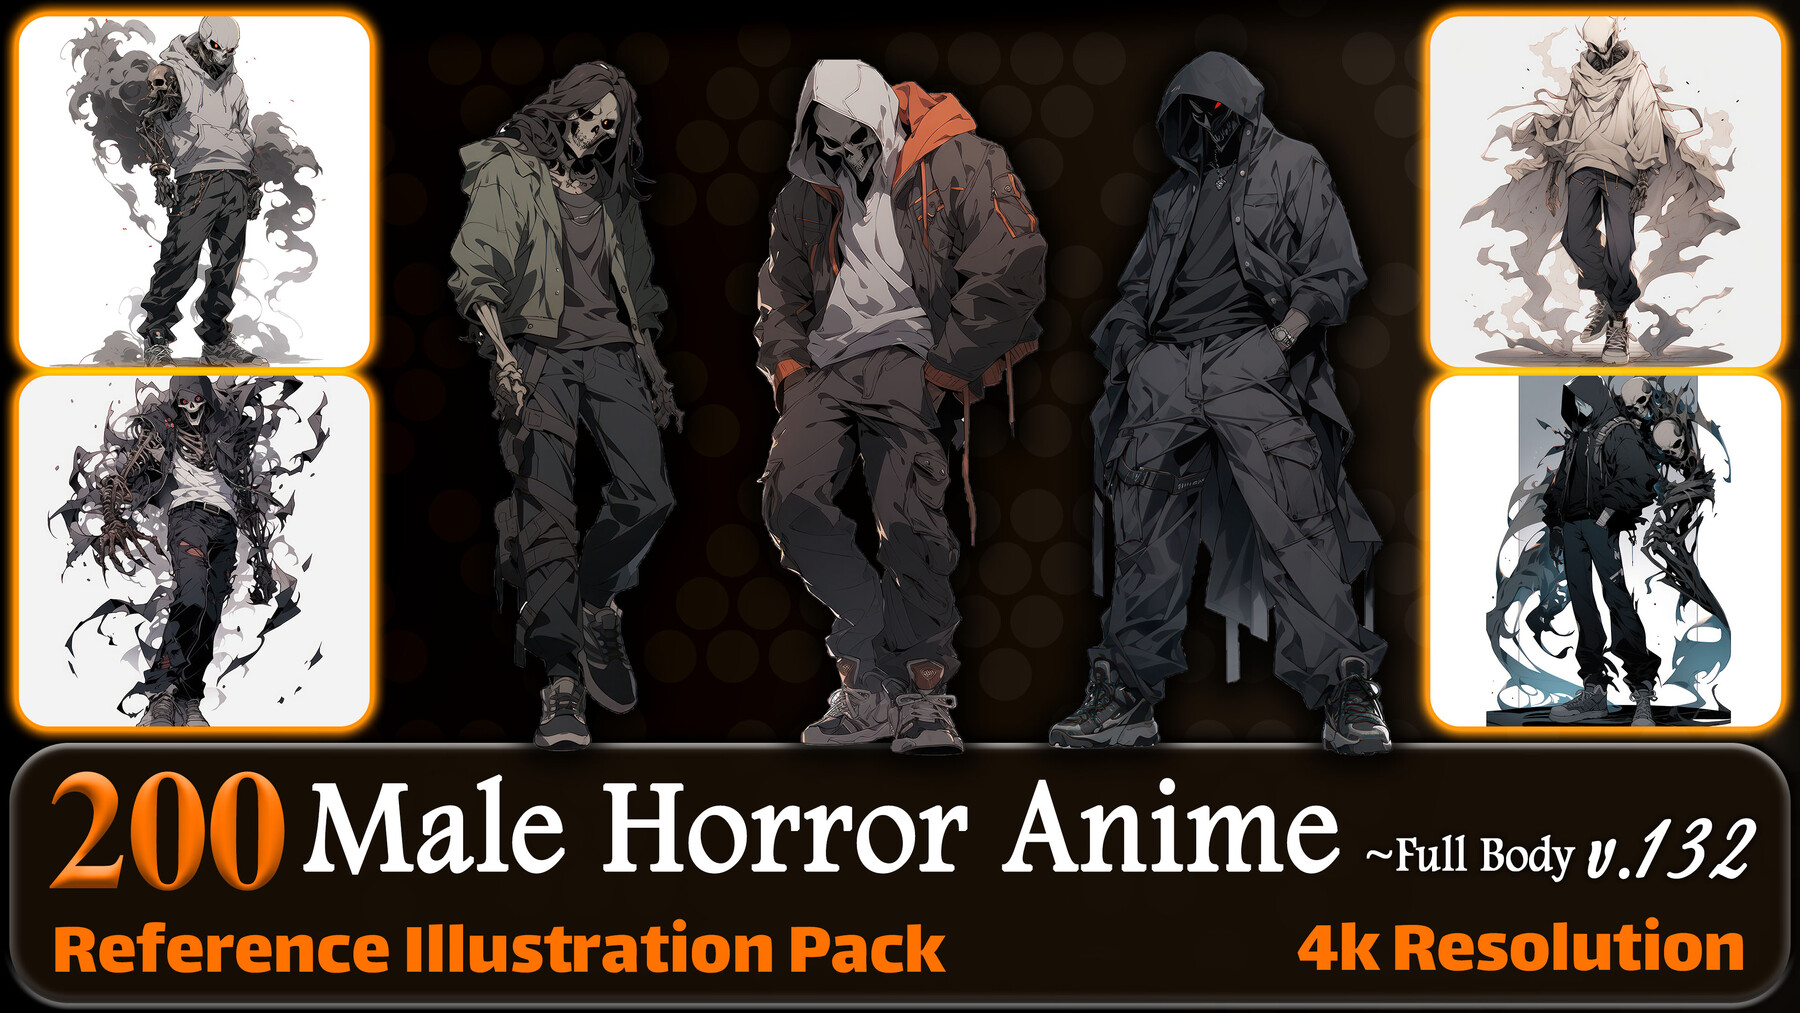 ArtStation - +25 Anime Horror Pack